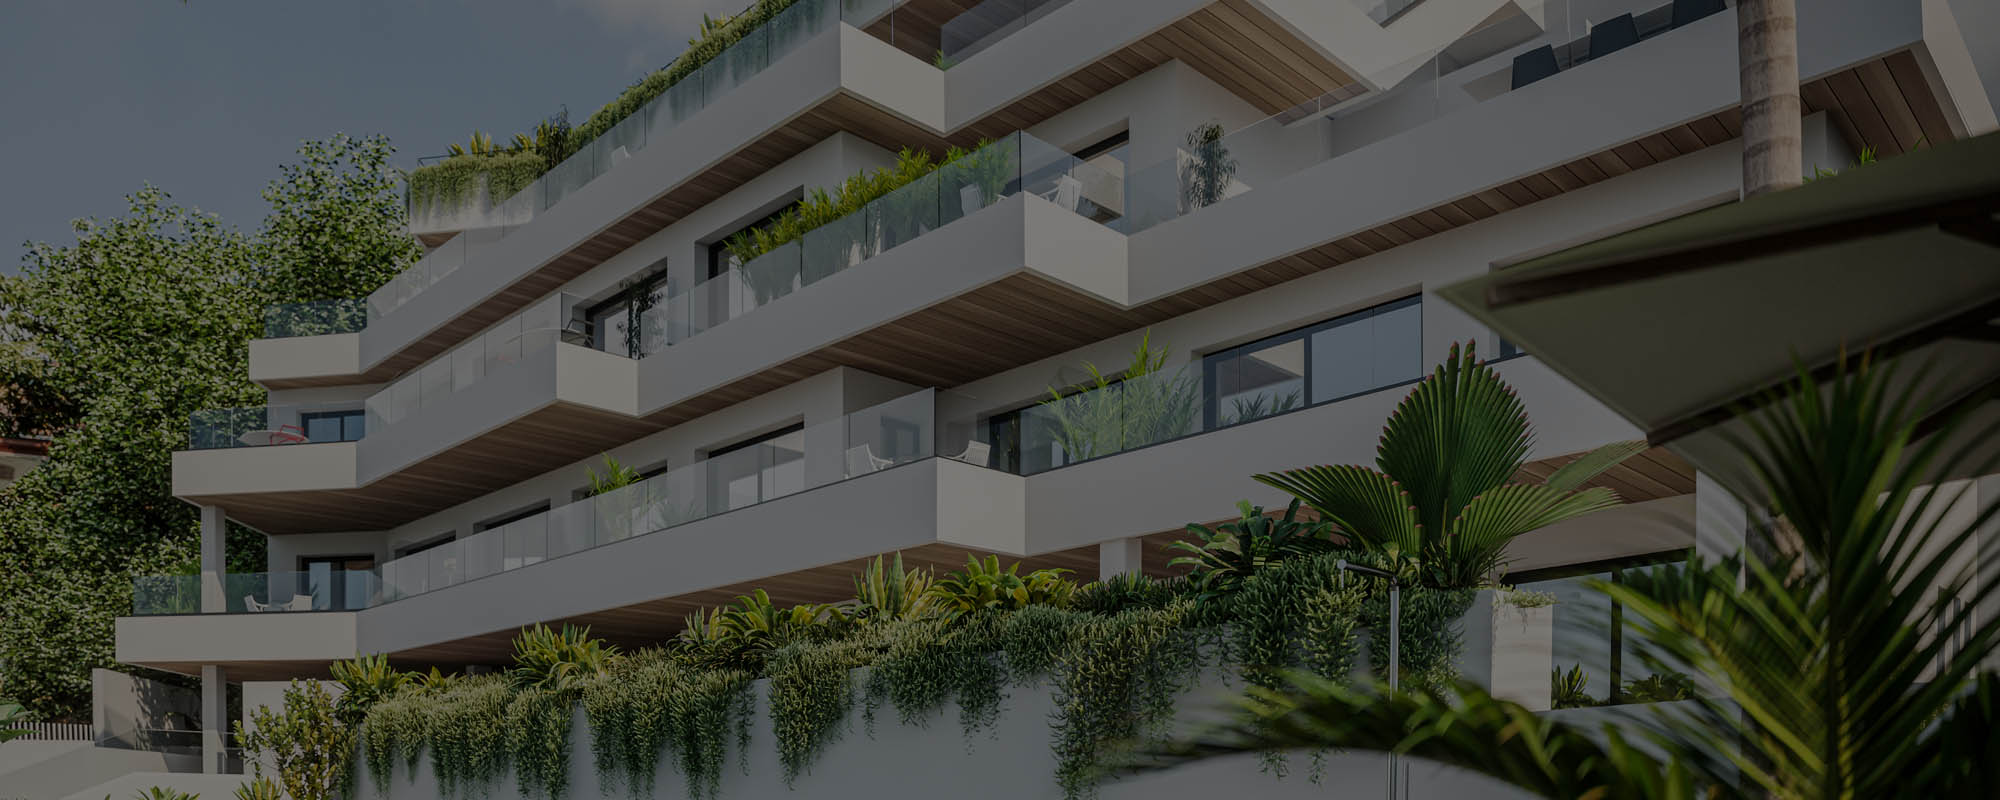 Renders 3D de una urbanización residencial en Torremolinos, Málaga